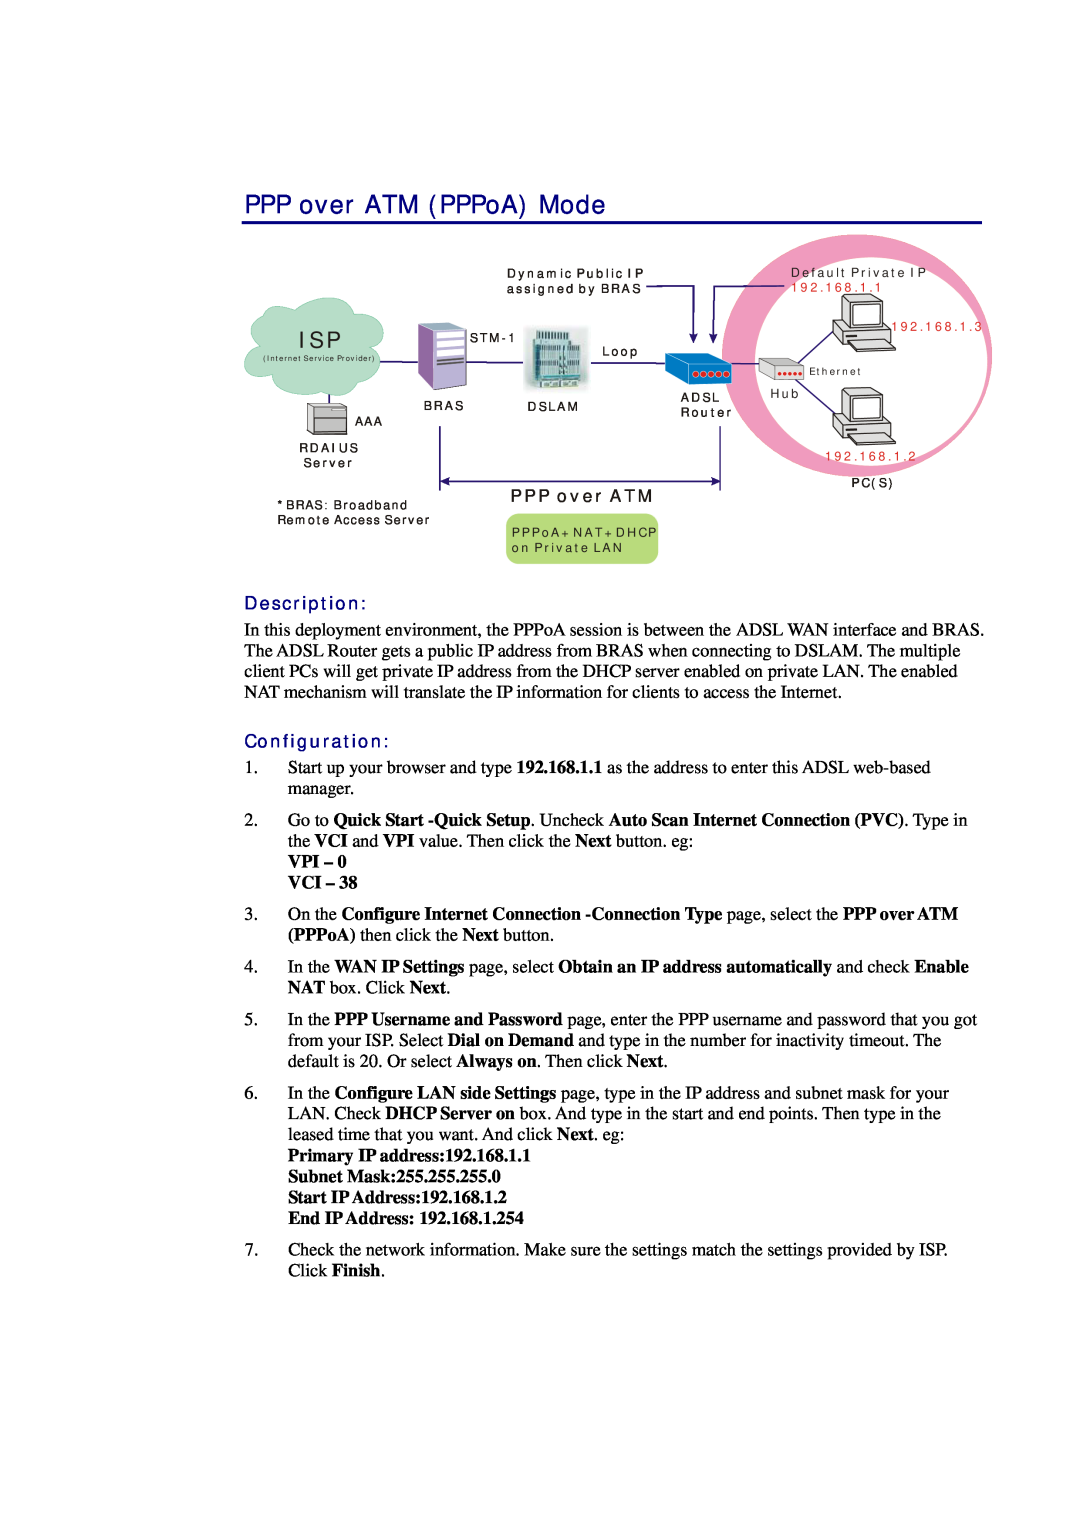 Siemens CL-010-I manual PPP over ATM PPPoA Mode, Description, Configuration, VPI - 0 VCI 